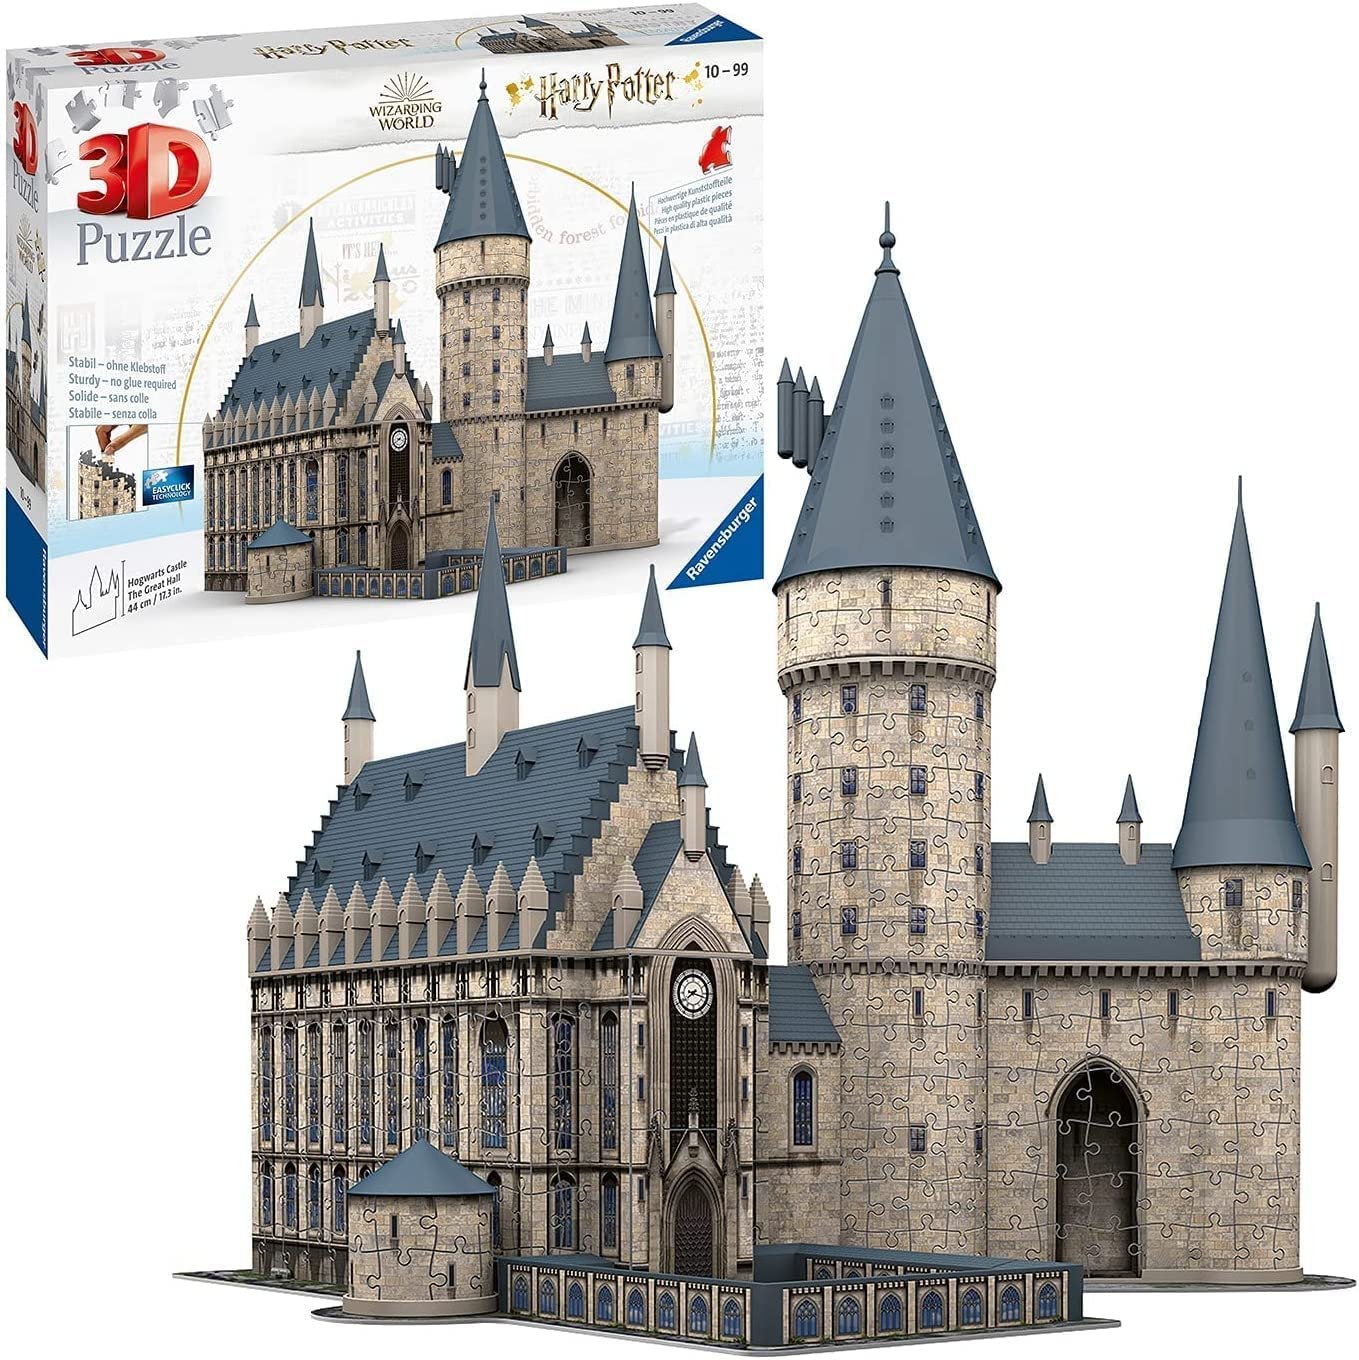 Ravensburger Spiel D Puzzle Harry Potter Hogwarts Schloss Die Große Halle, Teile ()